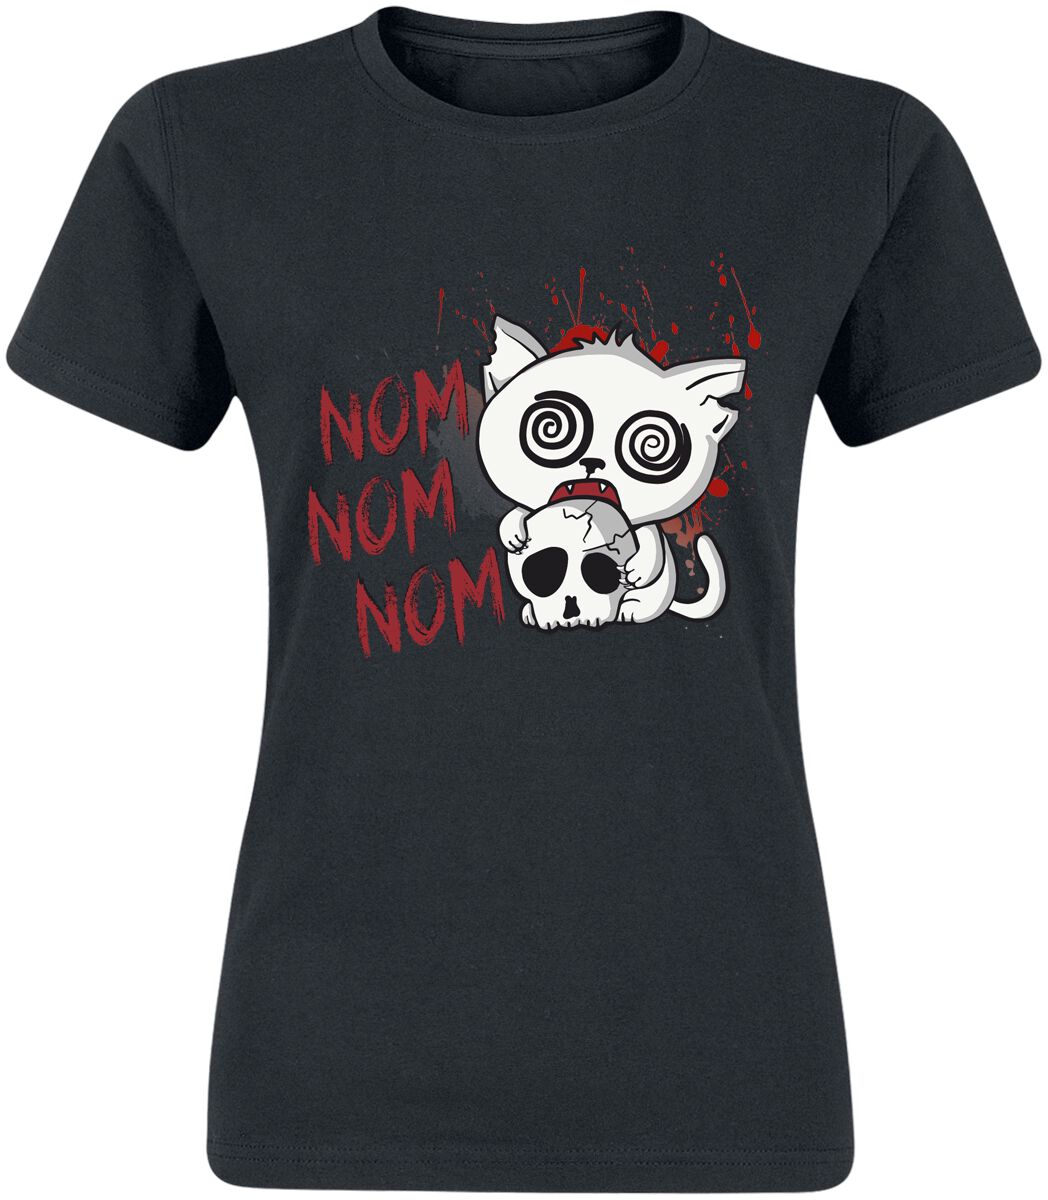 T-Shirt Manches courtes Fun de Tierisch - Nom Nom Nom - S à XXL - pour Femme - noir